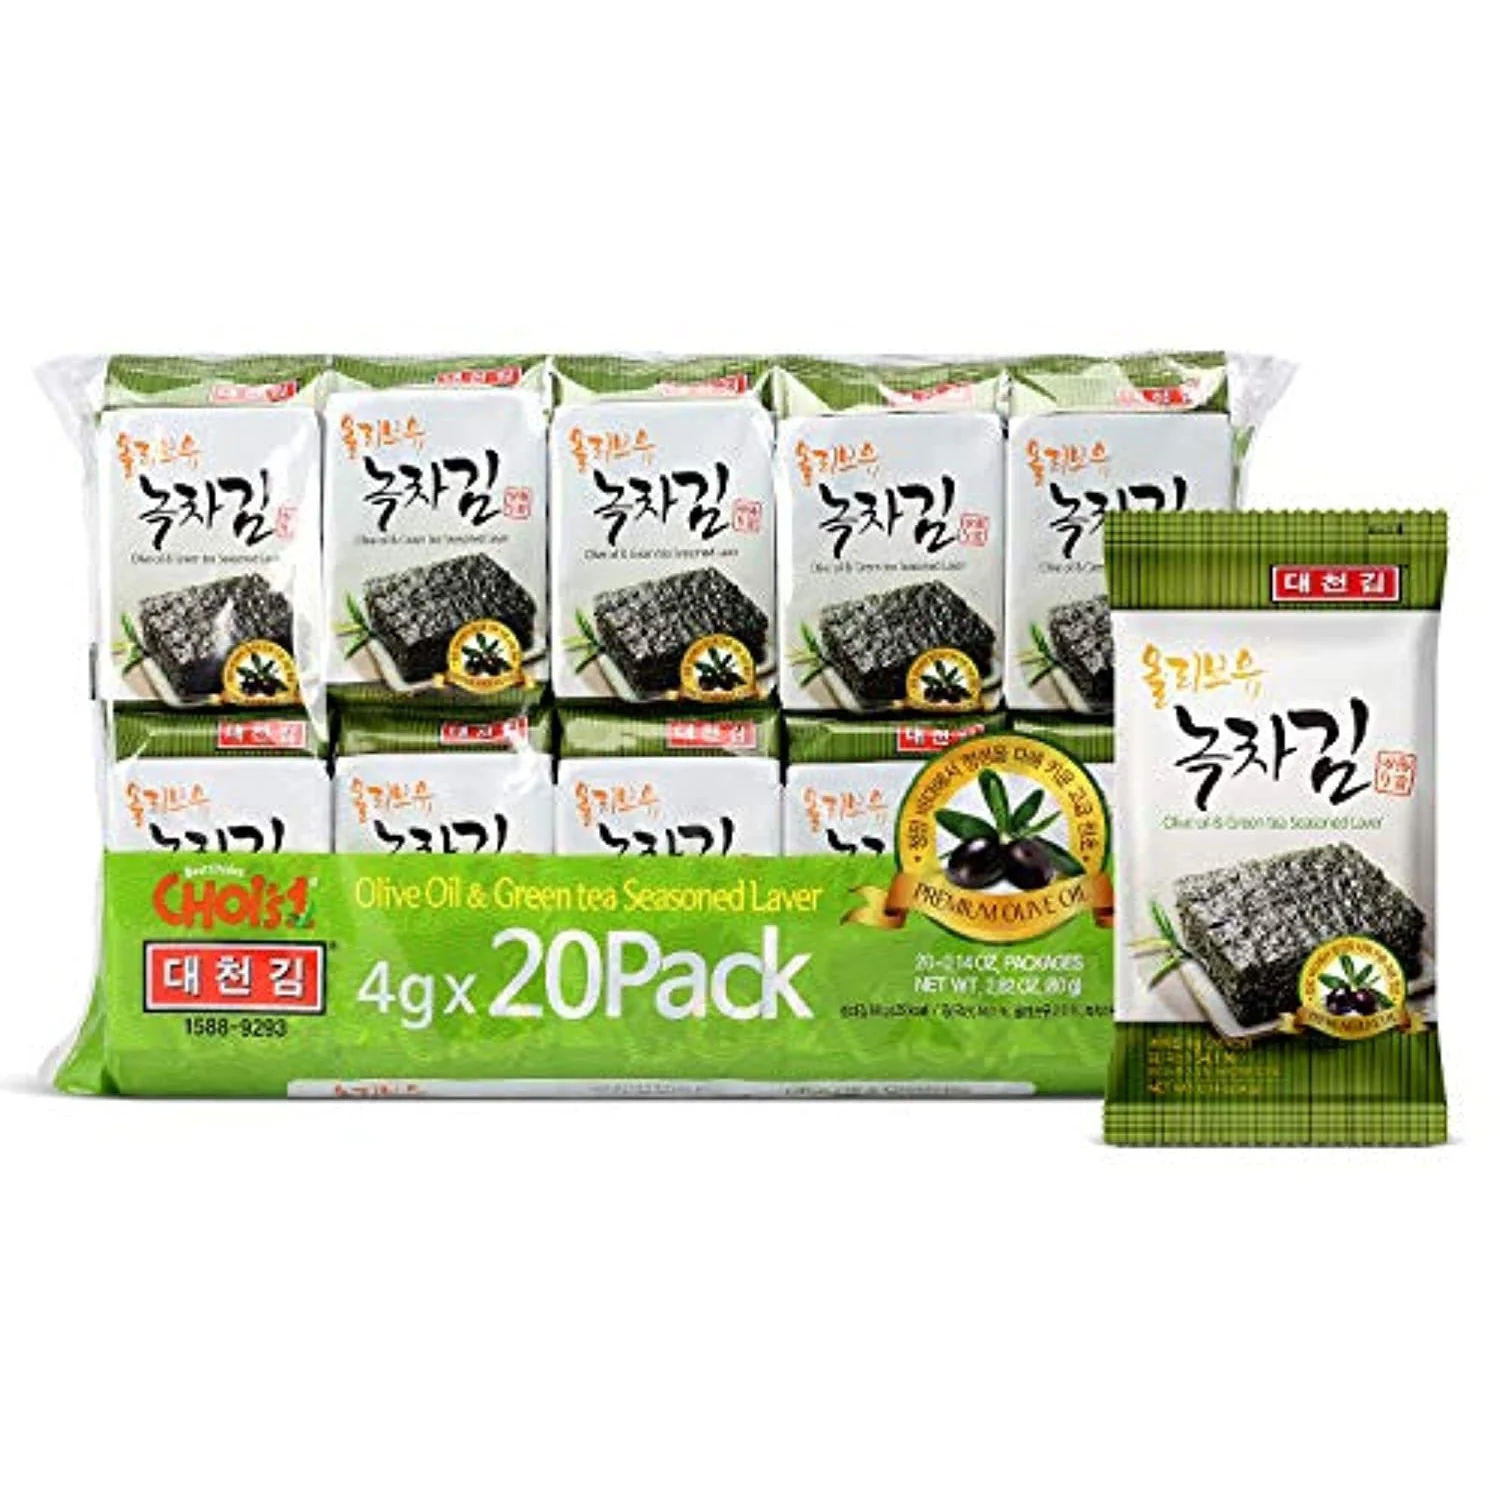 [DCS002] DAECHUN Olive Oil Seaweed Snacks, Pack of 20